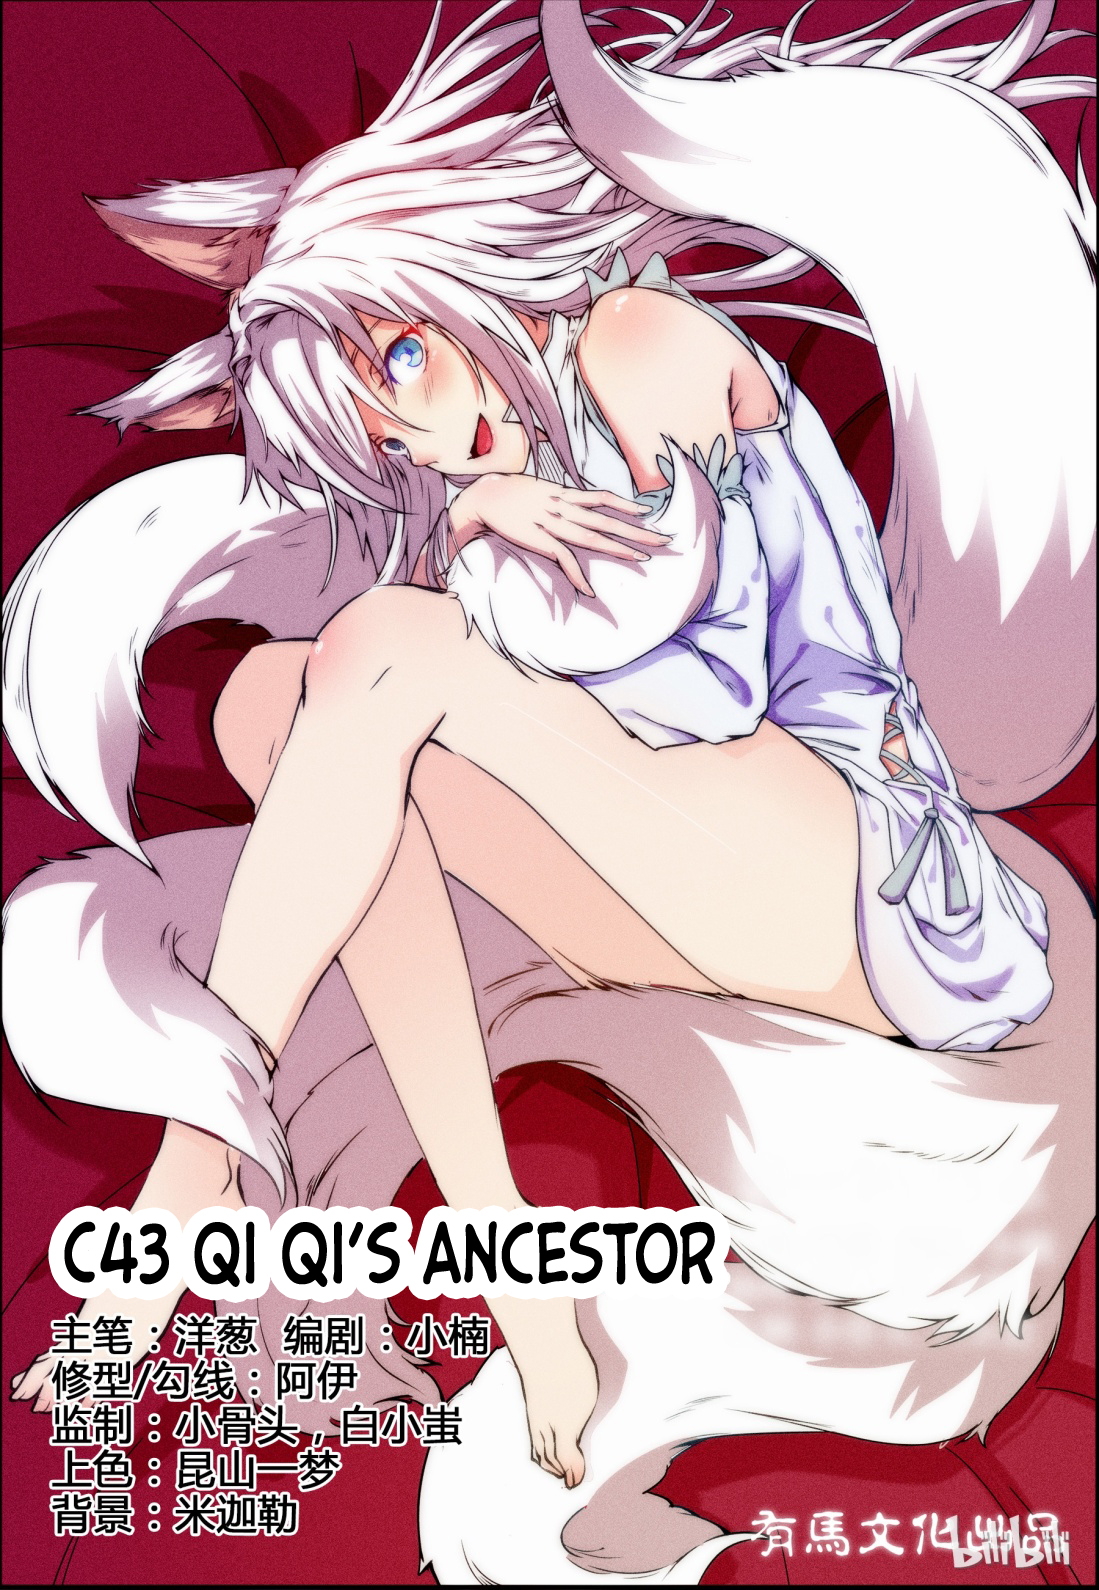 My Wife Is A Fox Spirit Ch. 43 Qi Qi's Ancestor